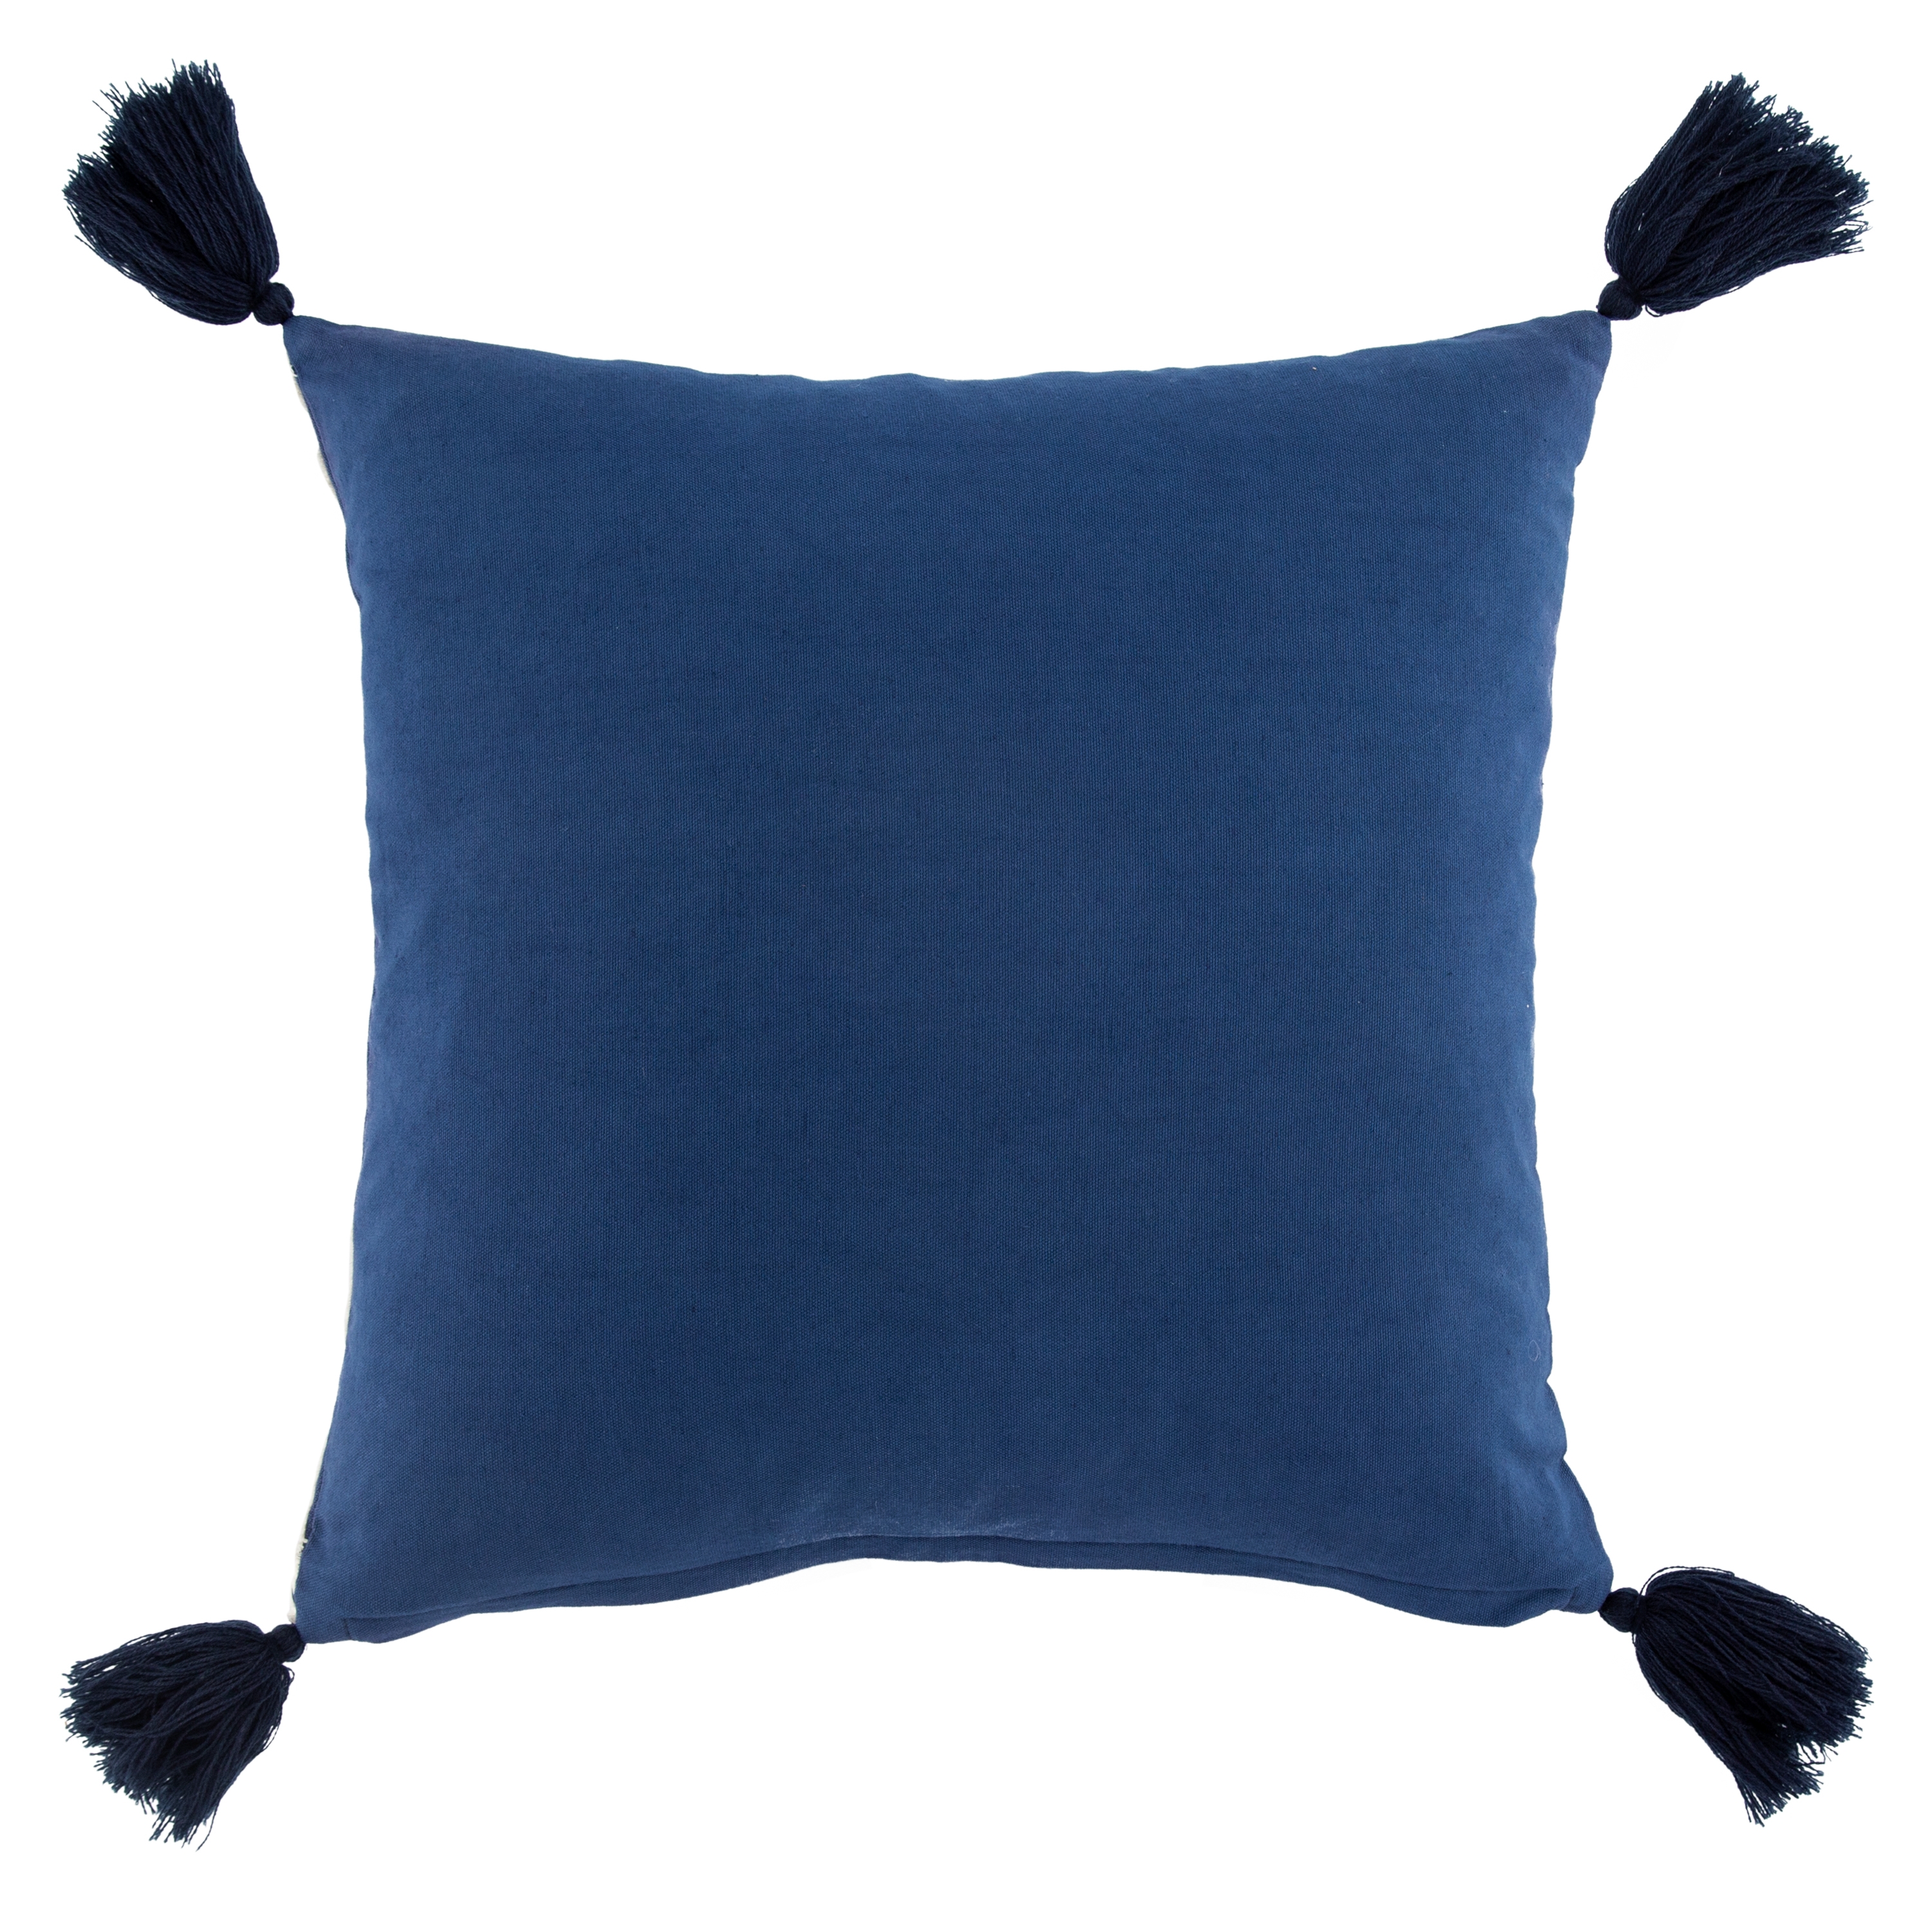 Design (US) Blue 20"X20" Pillow - Image 1